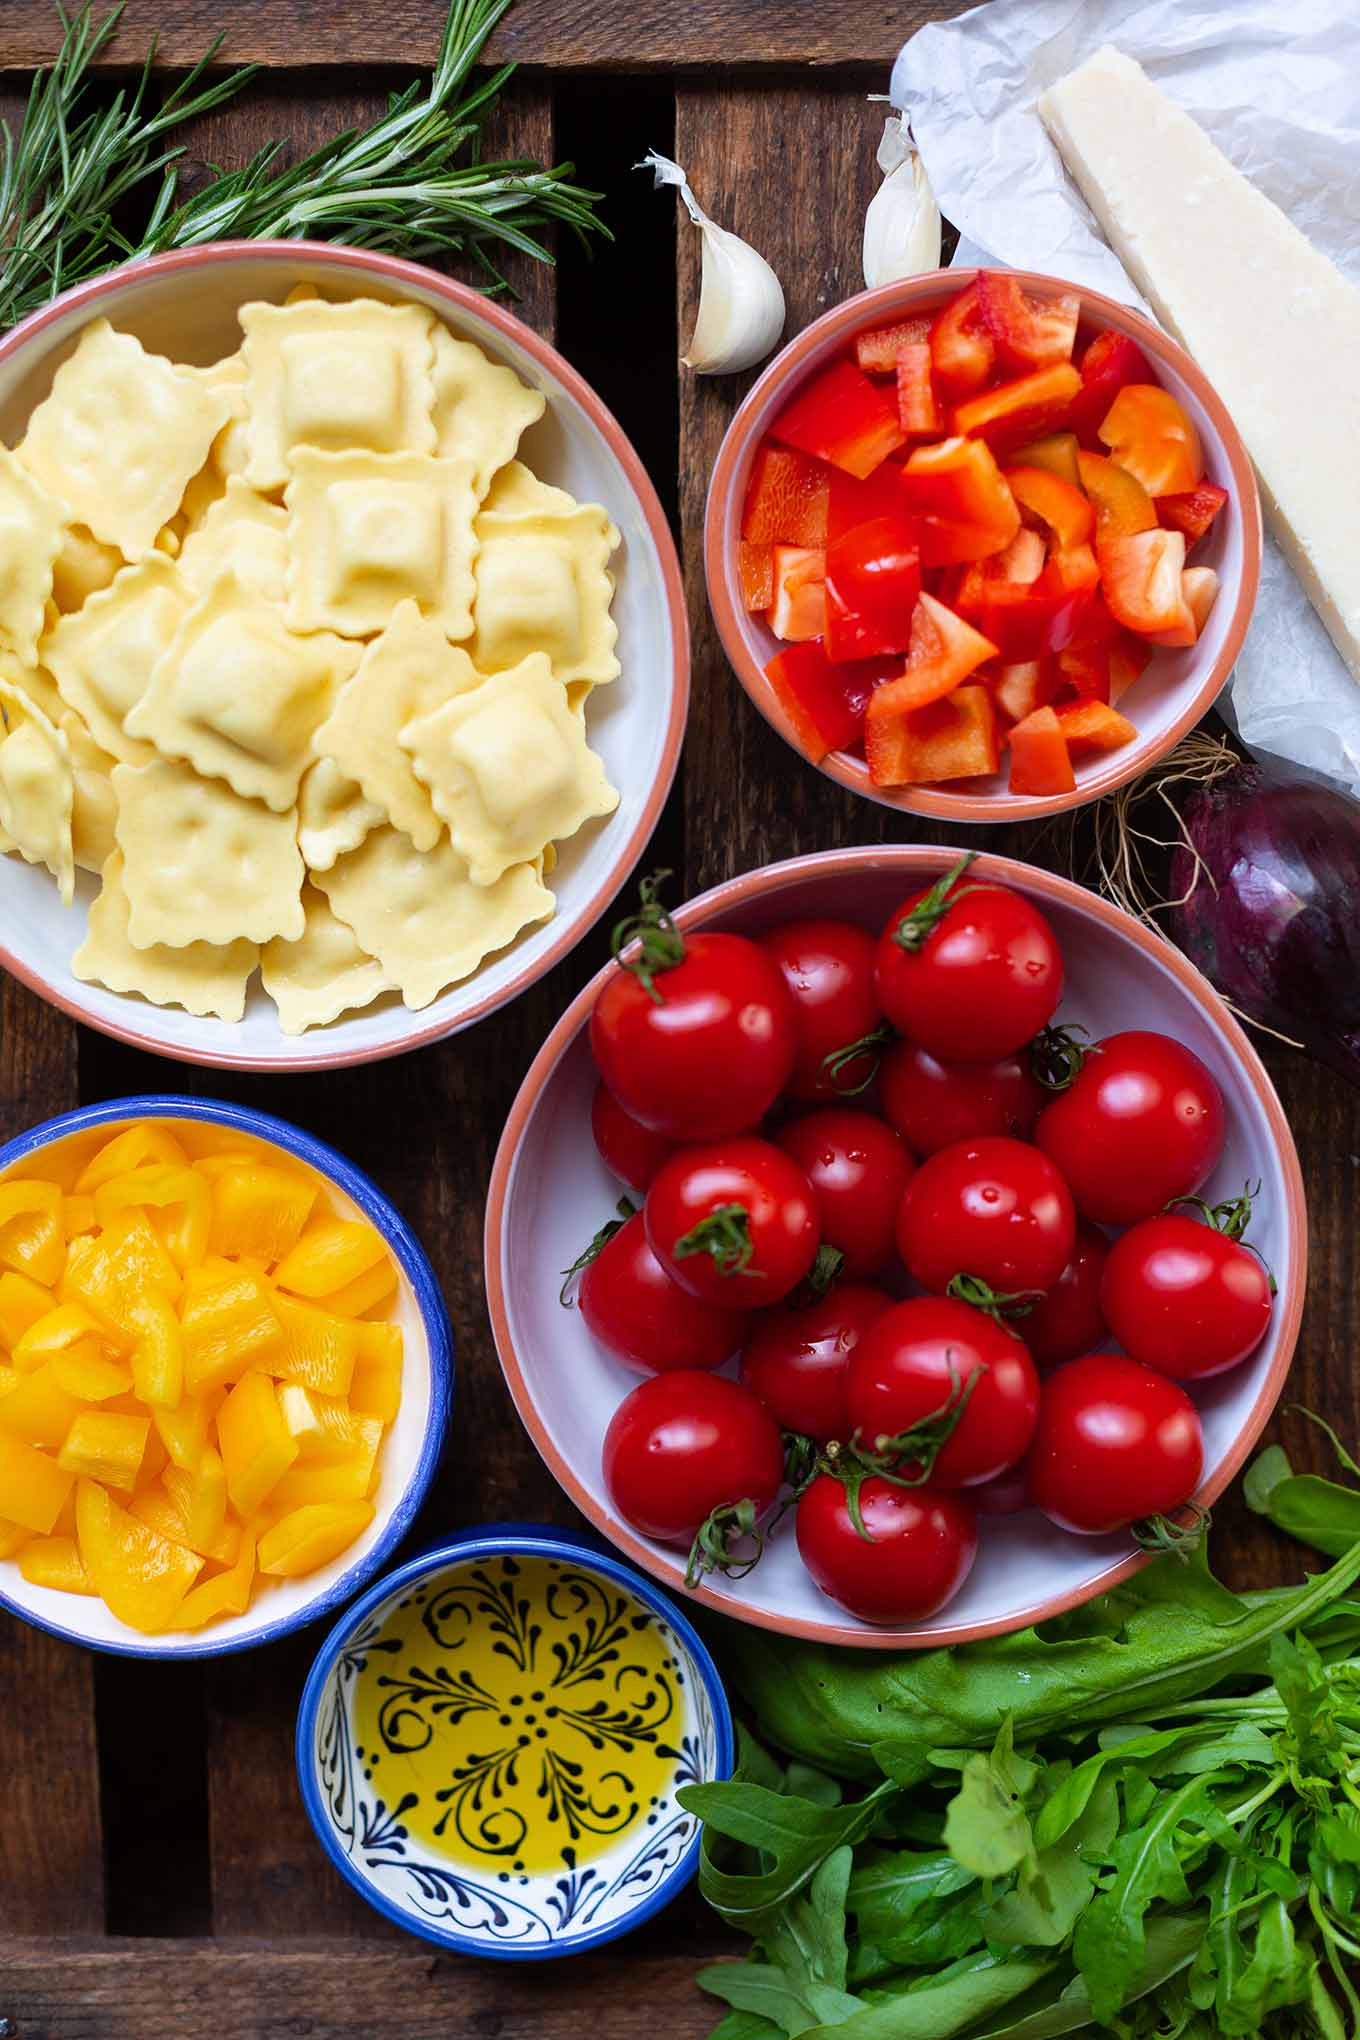 Ein Blech-Ravioli mit Tomaten, Paprika und Rucola. Dieses schnelle und einfache Rezept ist der Renner an keine Lust zu kochen Tagen, unbedingt probieren! - Kochkarussell.com #einblechrezept #schnellundeinfach #feierabendküche #kochkarussell